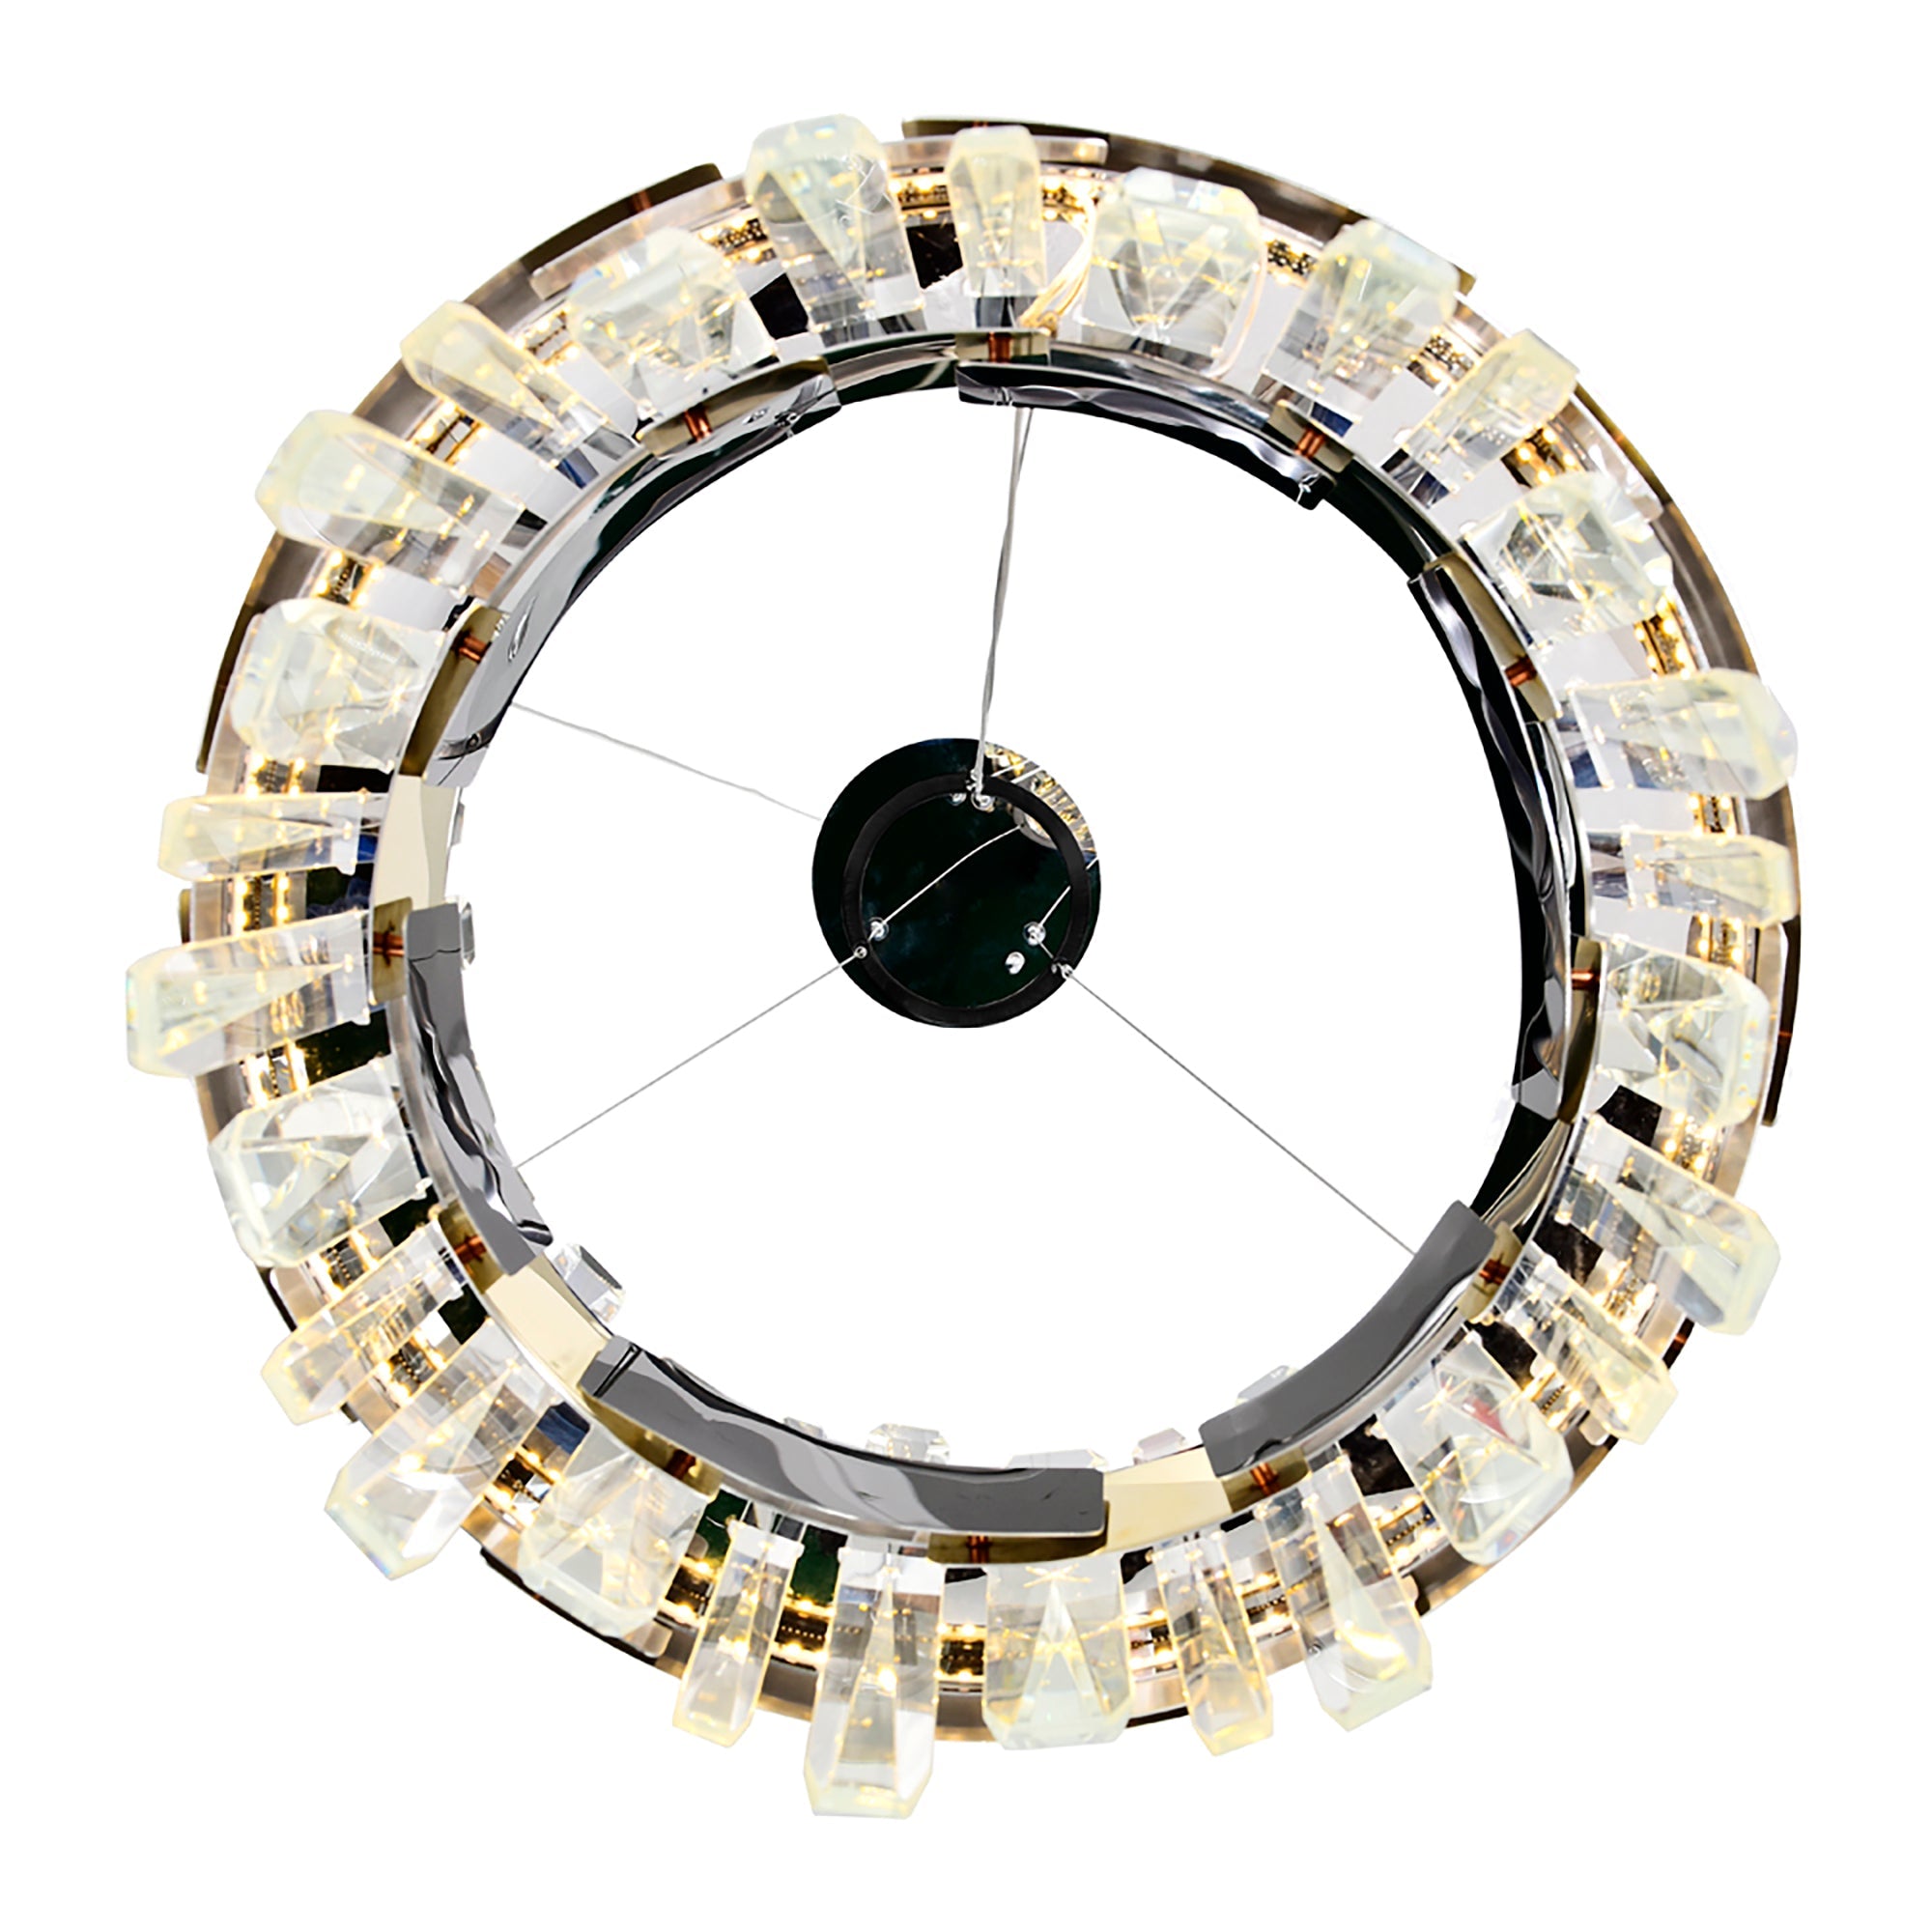 Aya LED Integrated Chandelier